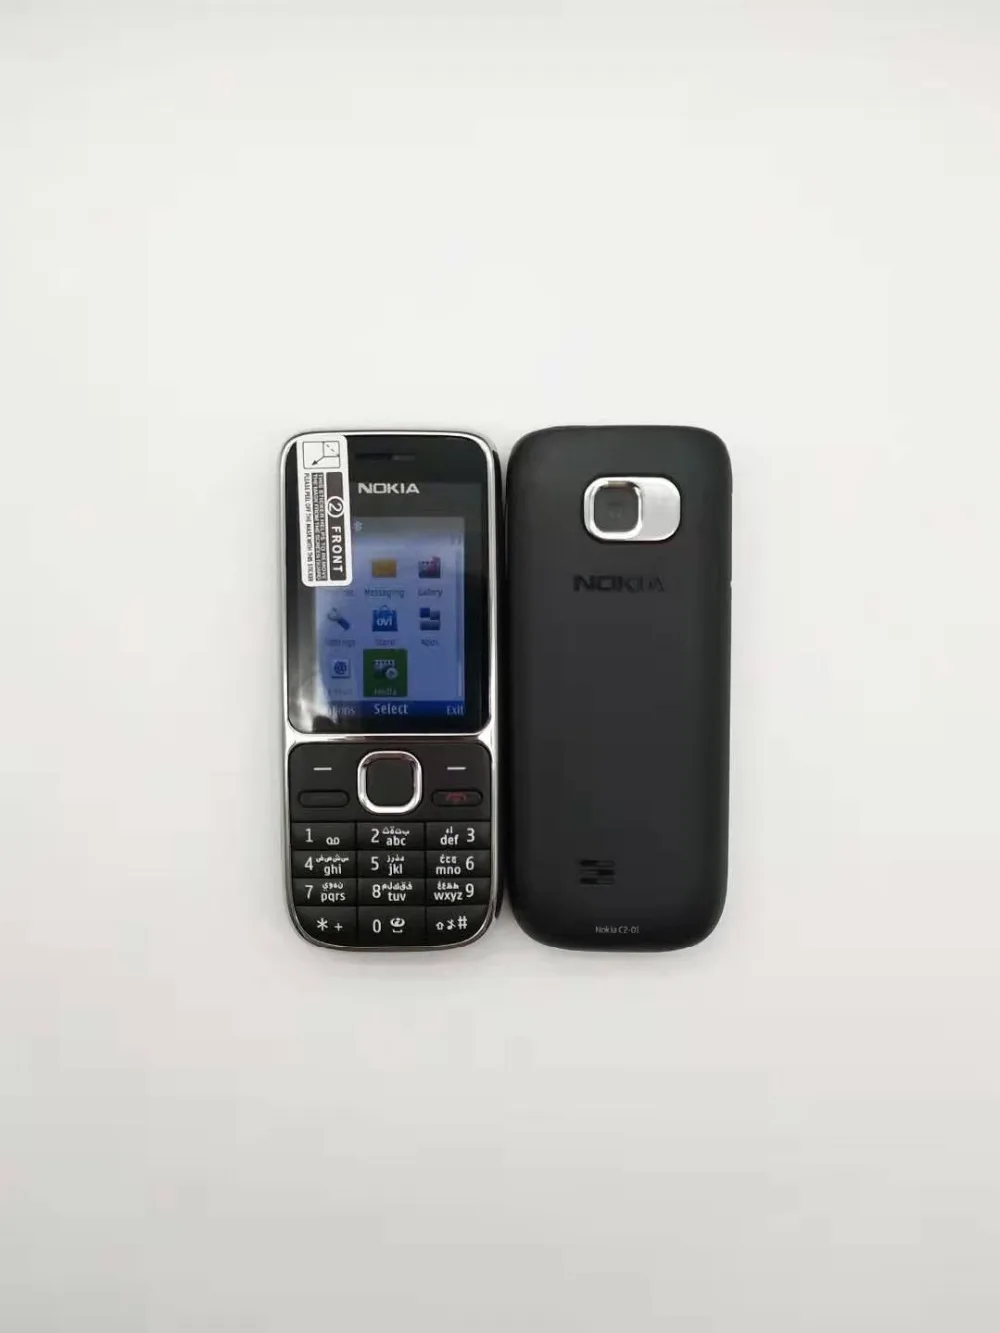 100% Оригинал Nokia C2-01 открыл мобильный телефон C2 2,0 "3.2MP Bluetooth России и клавиатура языка иврит Восстановленное GSM/WCDMA 3g телефон